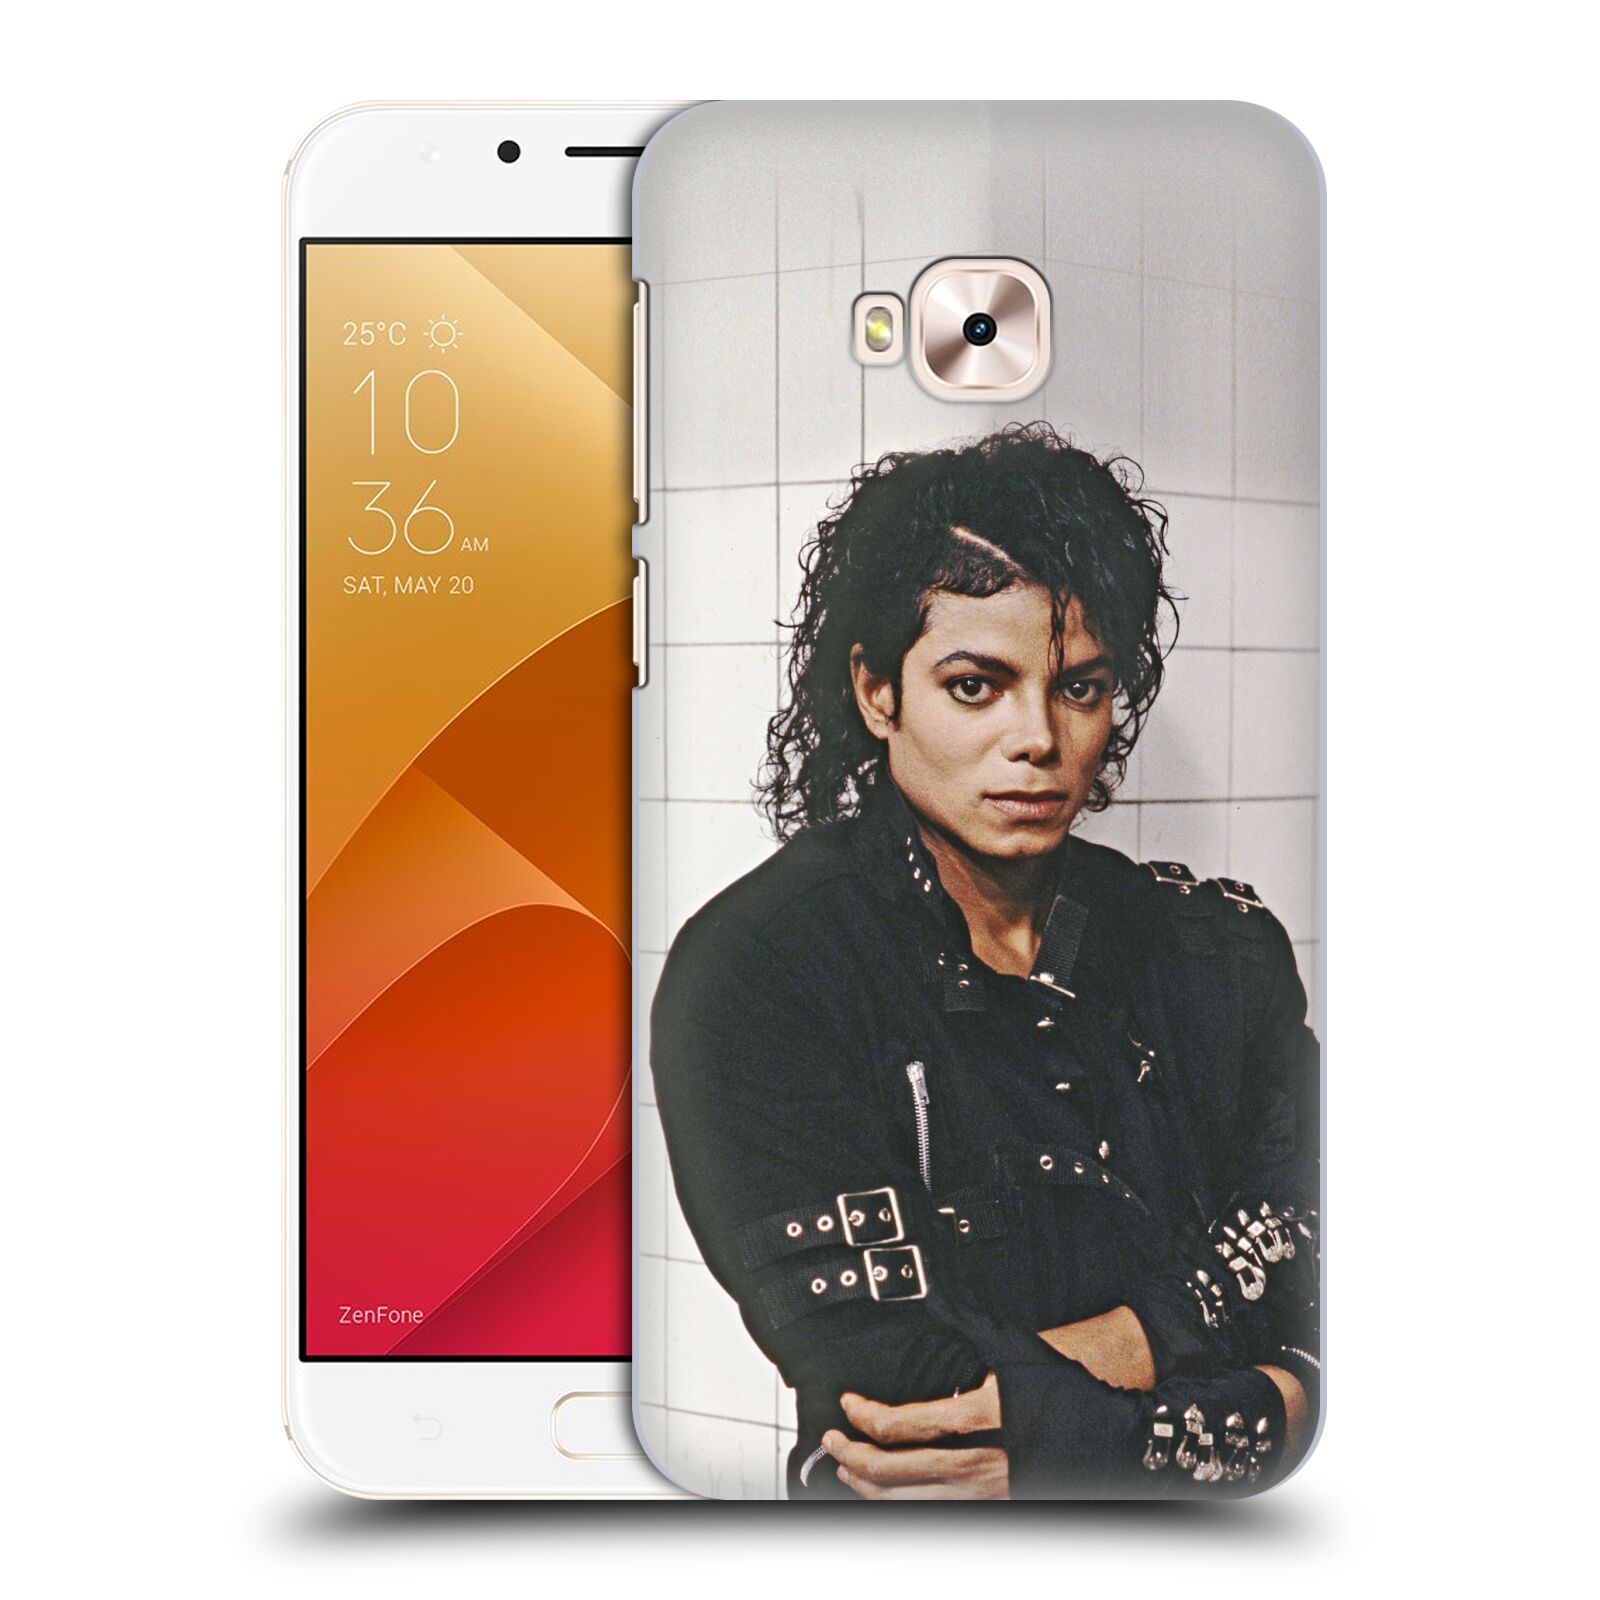 Zadní obal pro mobil Asus Zenfone 4 Selfie Pro ZD552KL - HEAD CASE - Zpěvák Michael Jackson - pohled